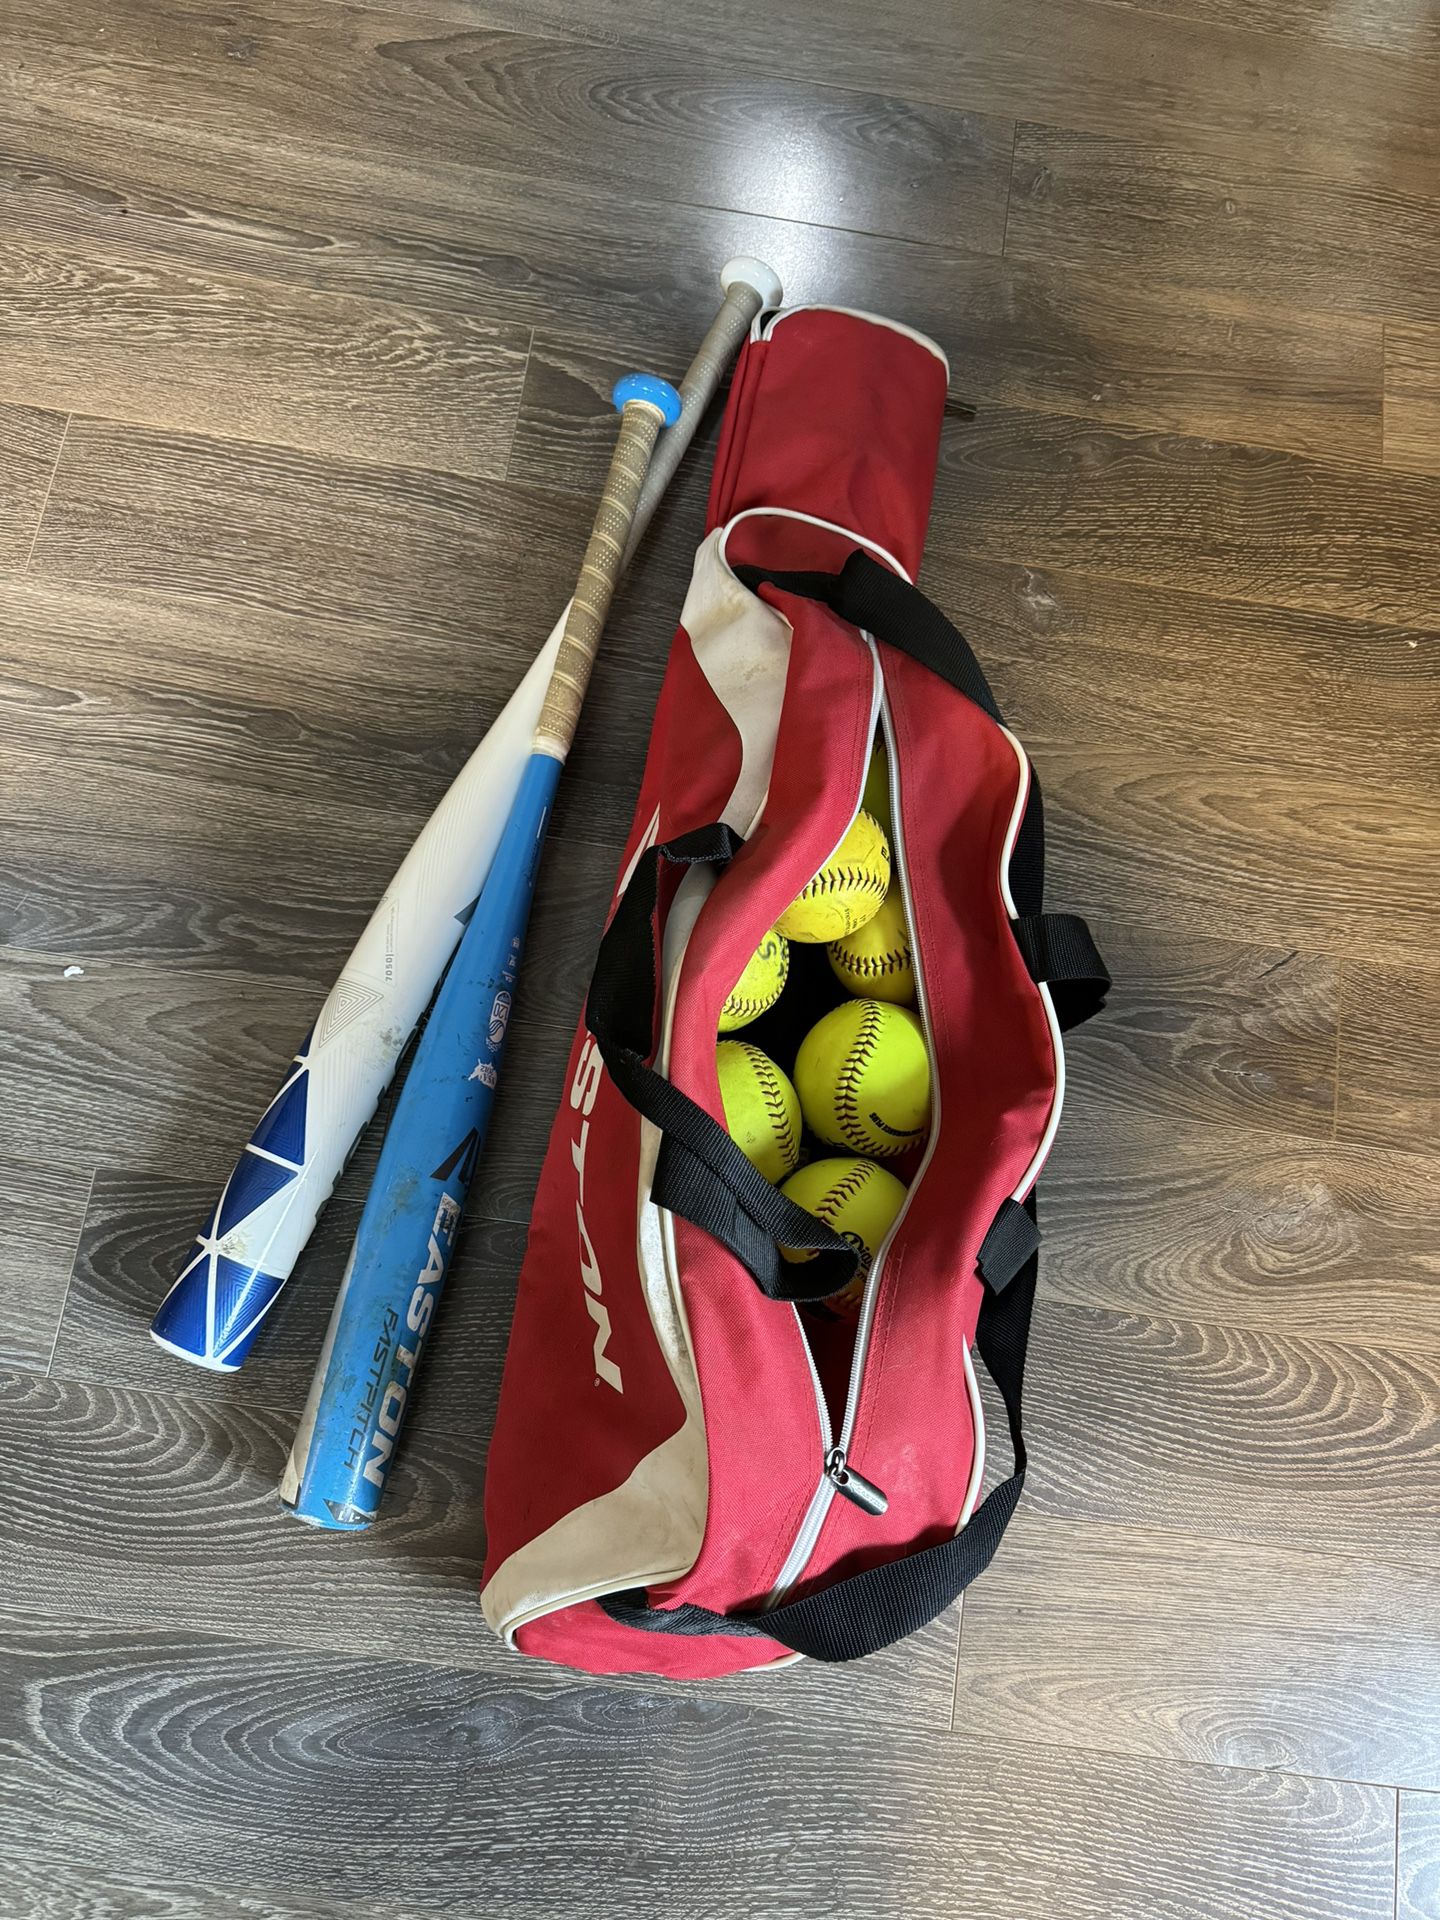 Softball Bag, softballs, and two softball bats